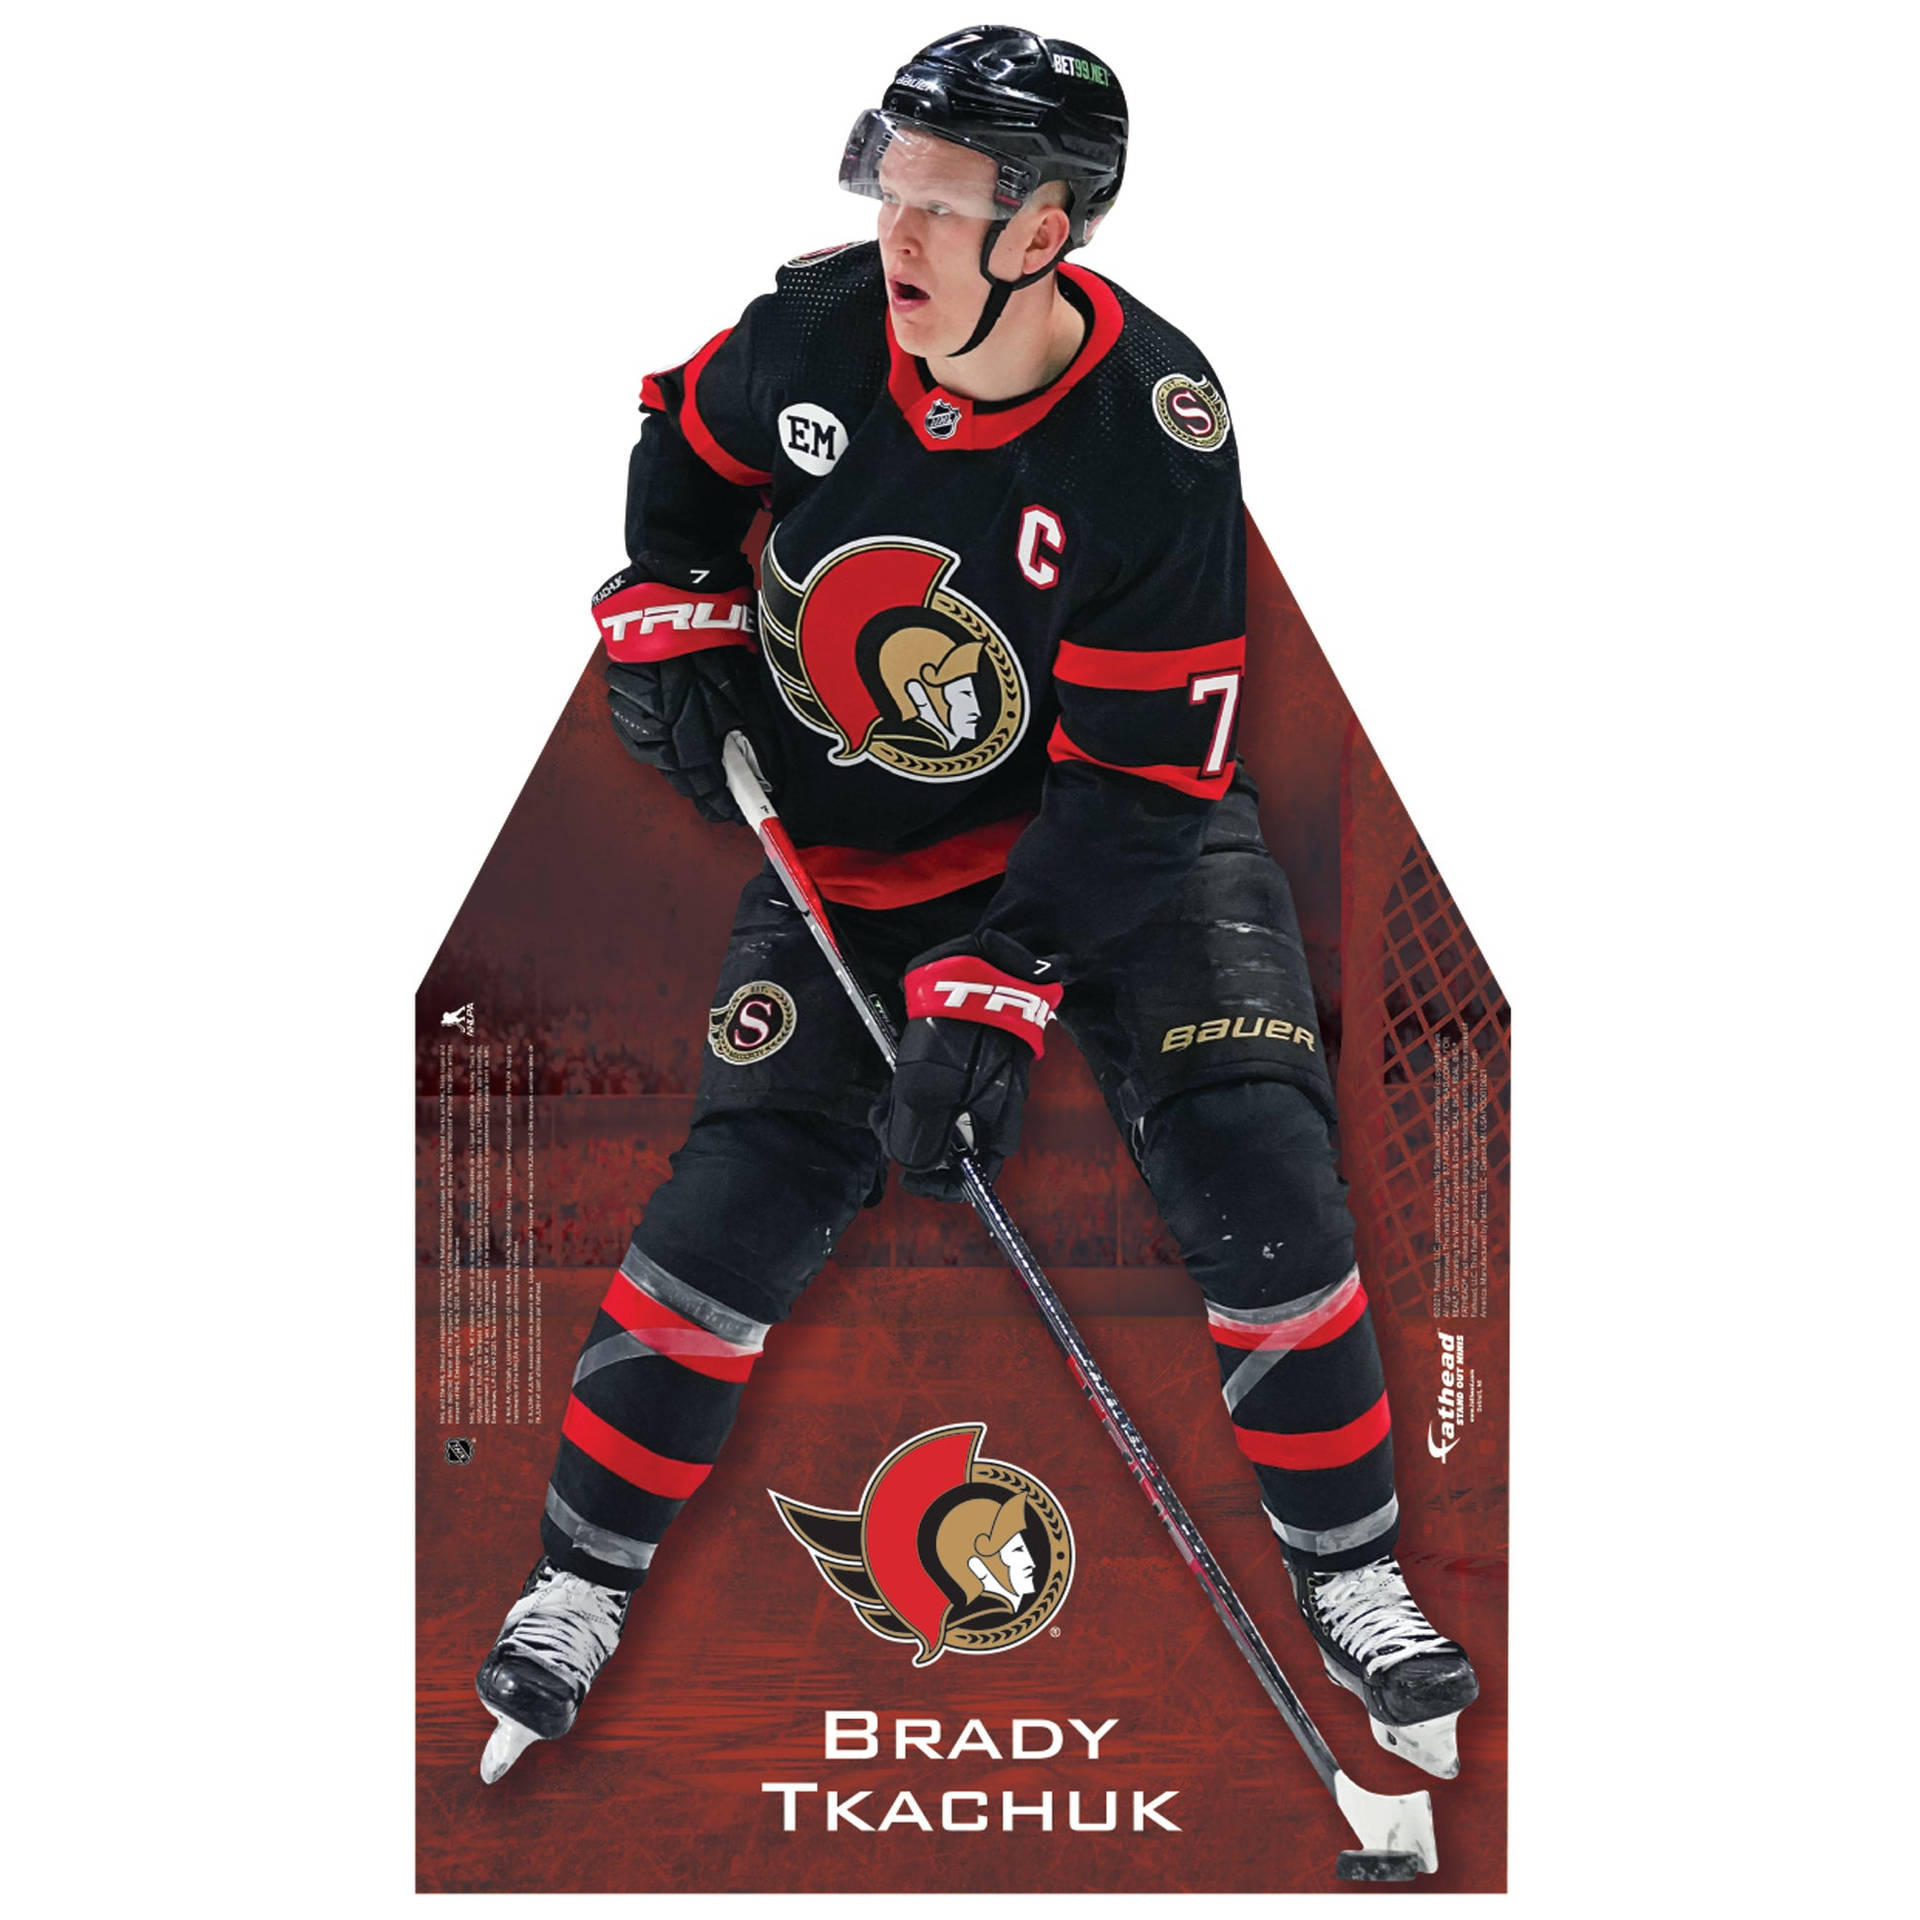 Imagengráfica De Brady Tkachuk De Los Ottawa Senators. Fondo de pantalla